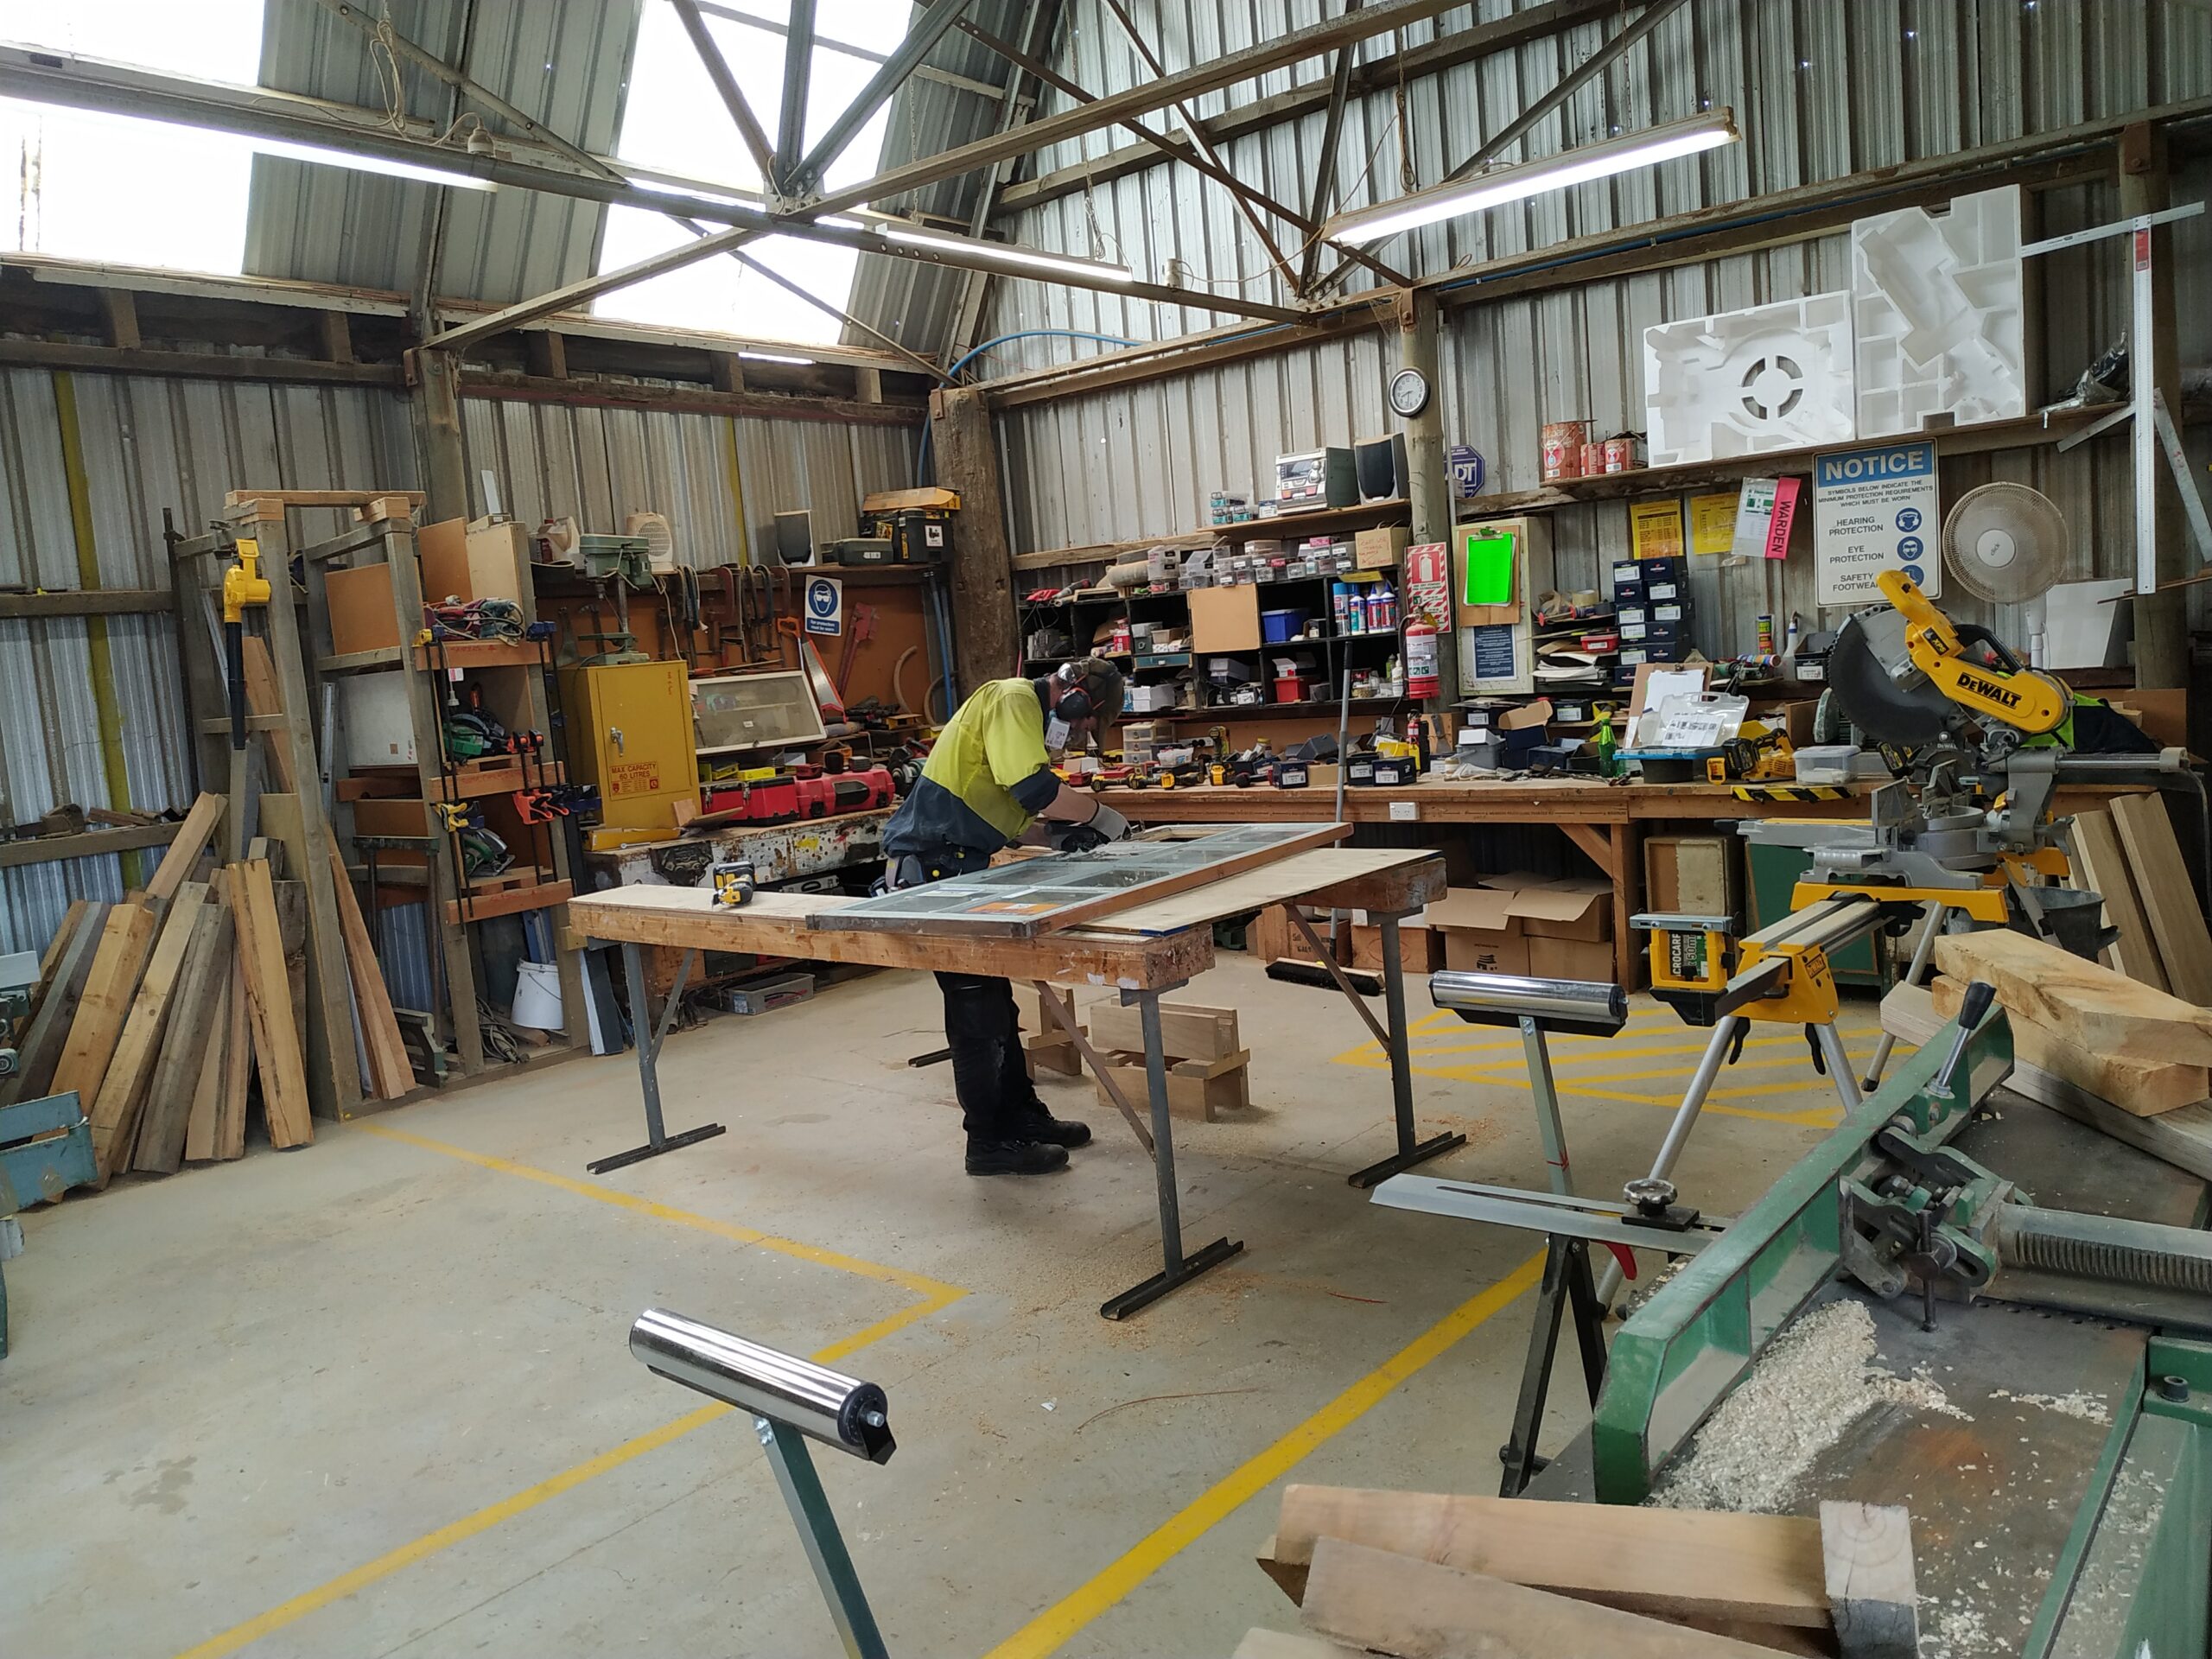 Railway shed sales office restoration - Workshop